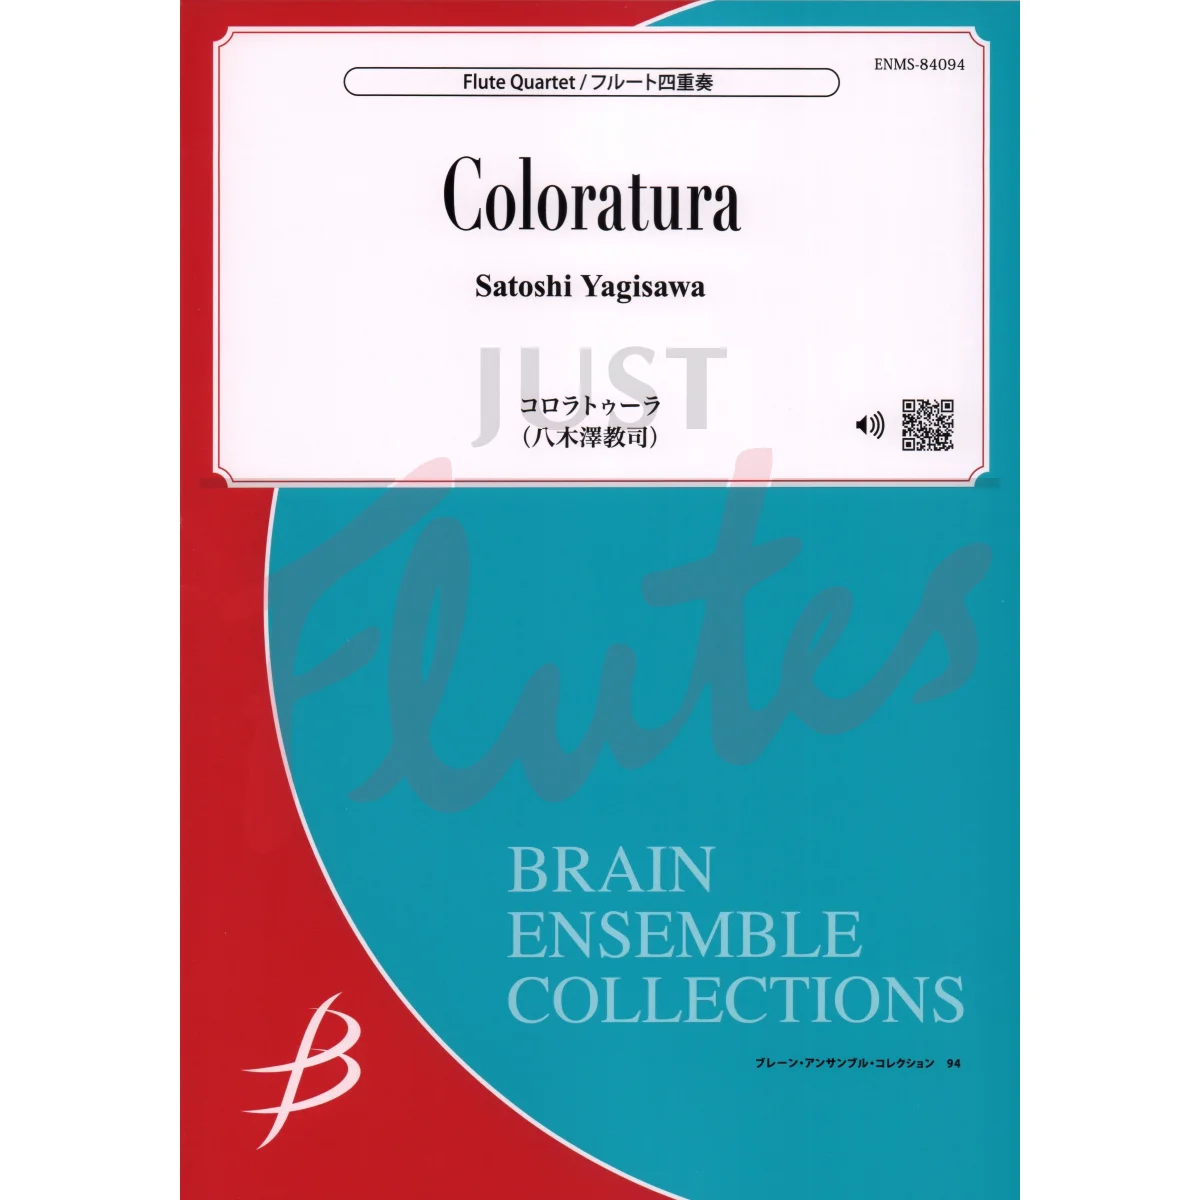 Coloratura for Flute Quartet